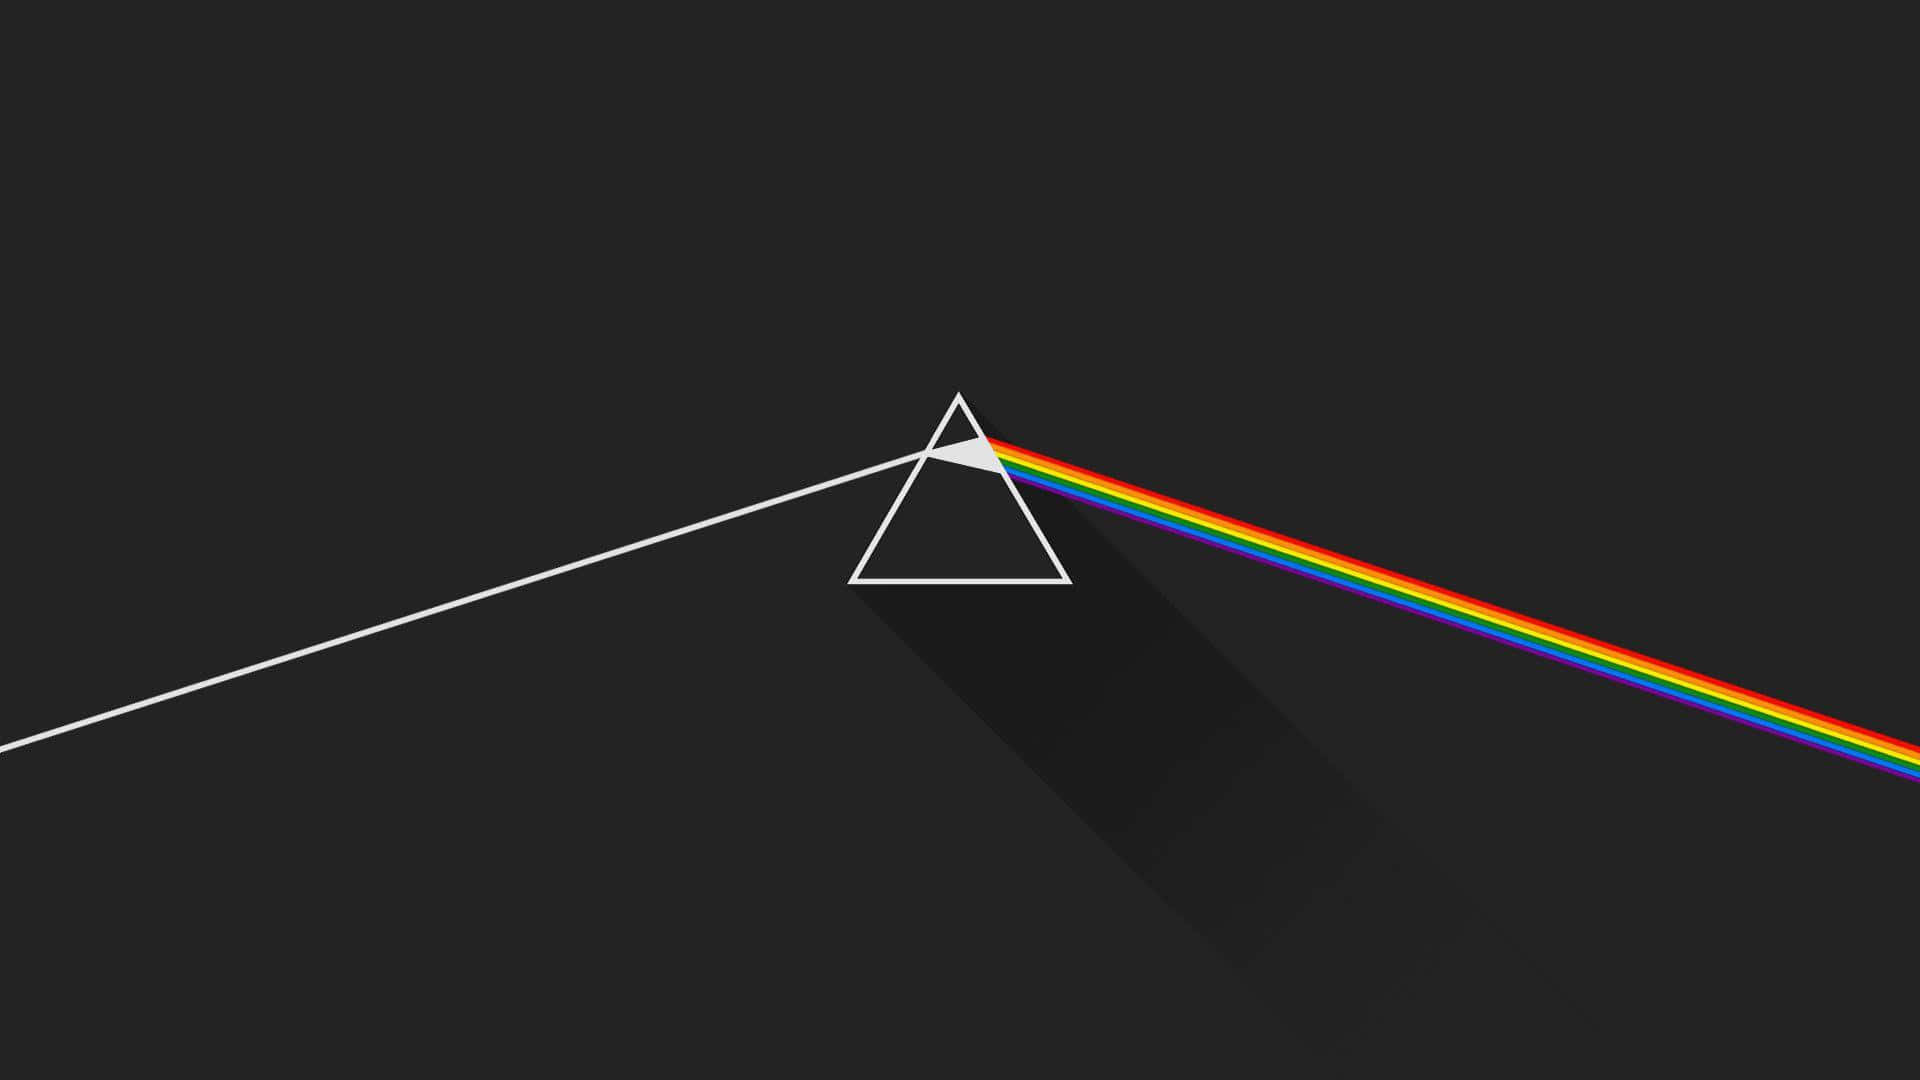 Upplevdark Side Of The Moon Av Pink Floyd Som Dator- Eller Mobilbakgrund. Wallpaper